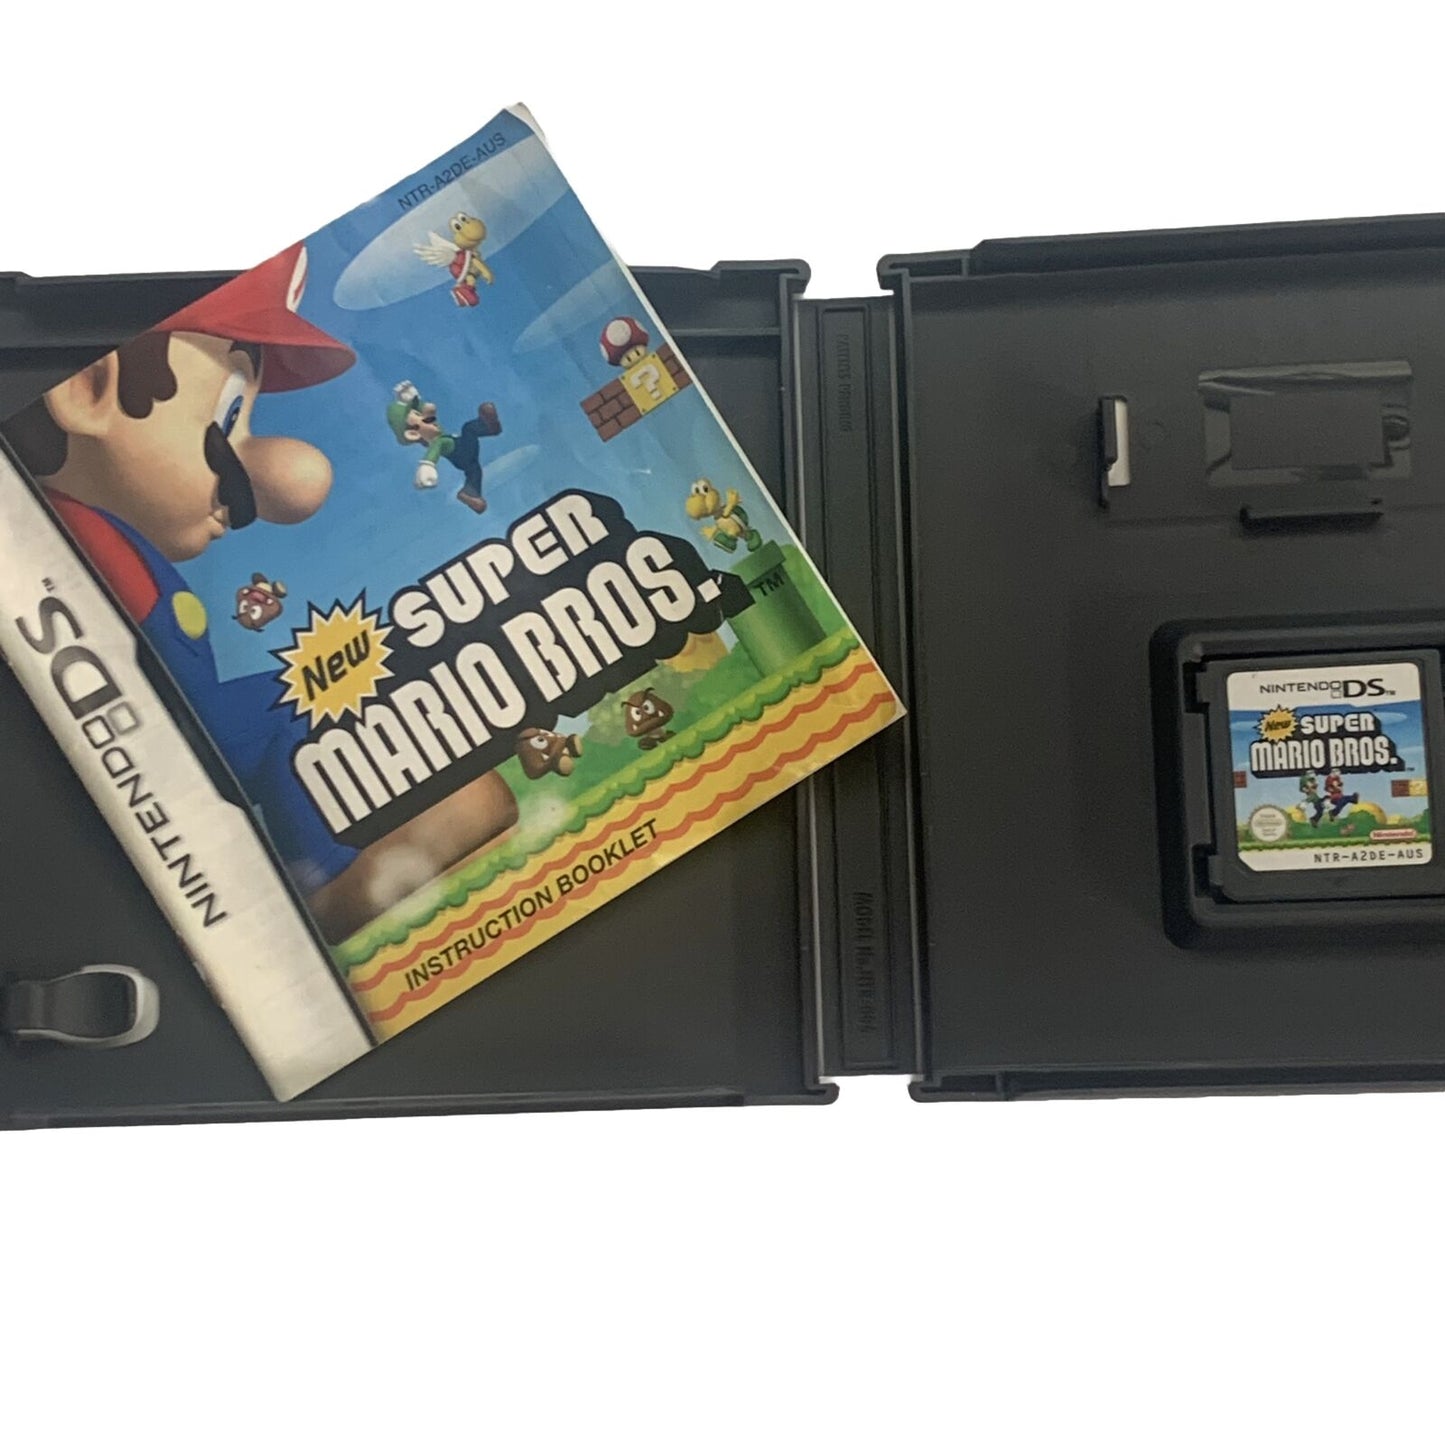 New Super Mario Bros. Nintendo DS Game